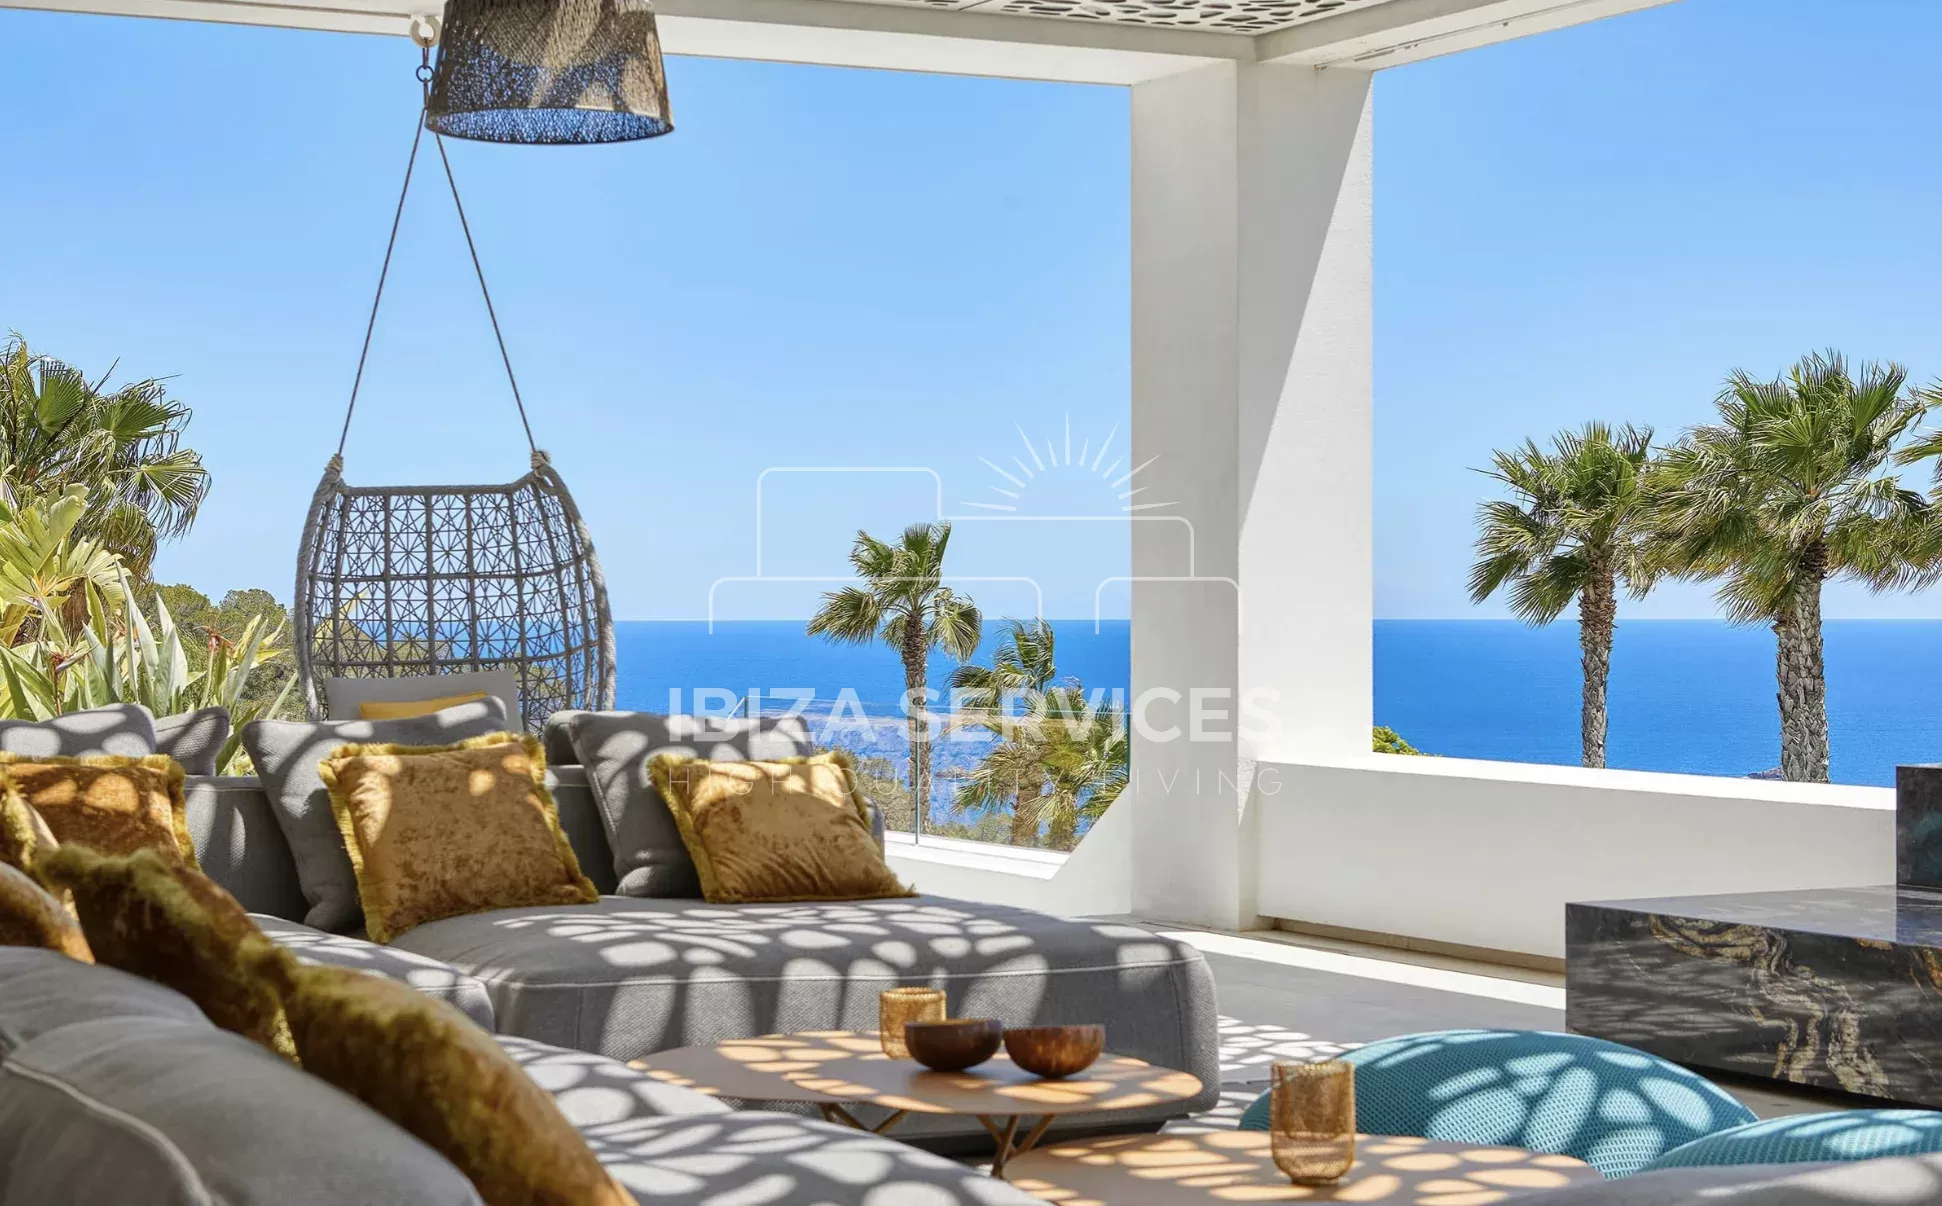 Villa de lujo con vistas al mar y 7 dormitorios ensuite para alquiler vacacional